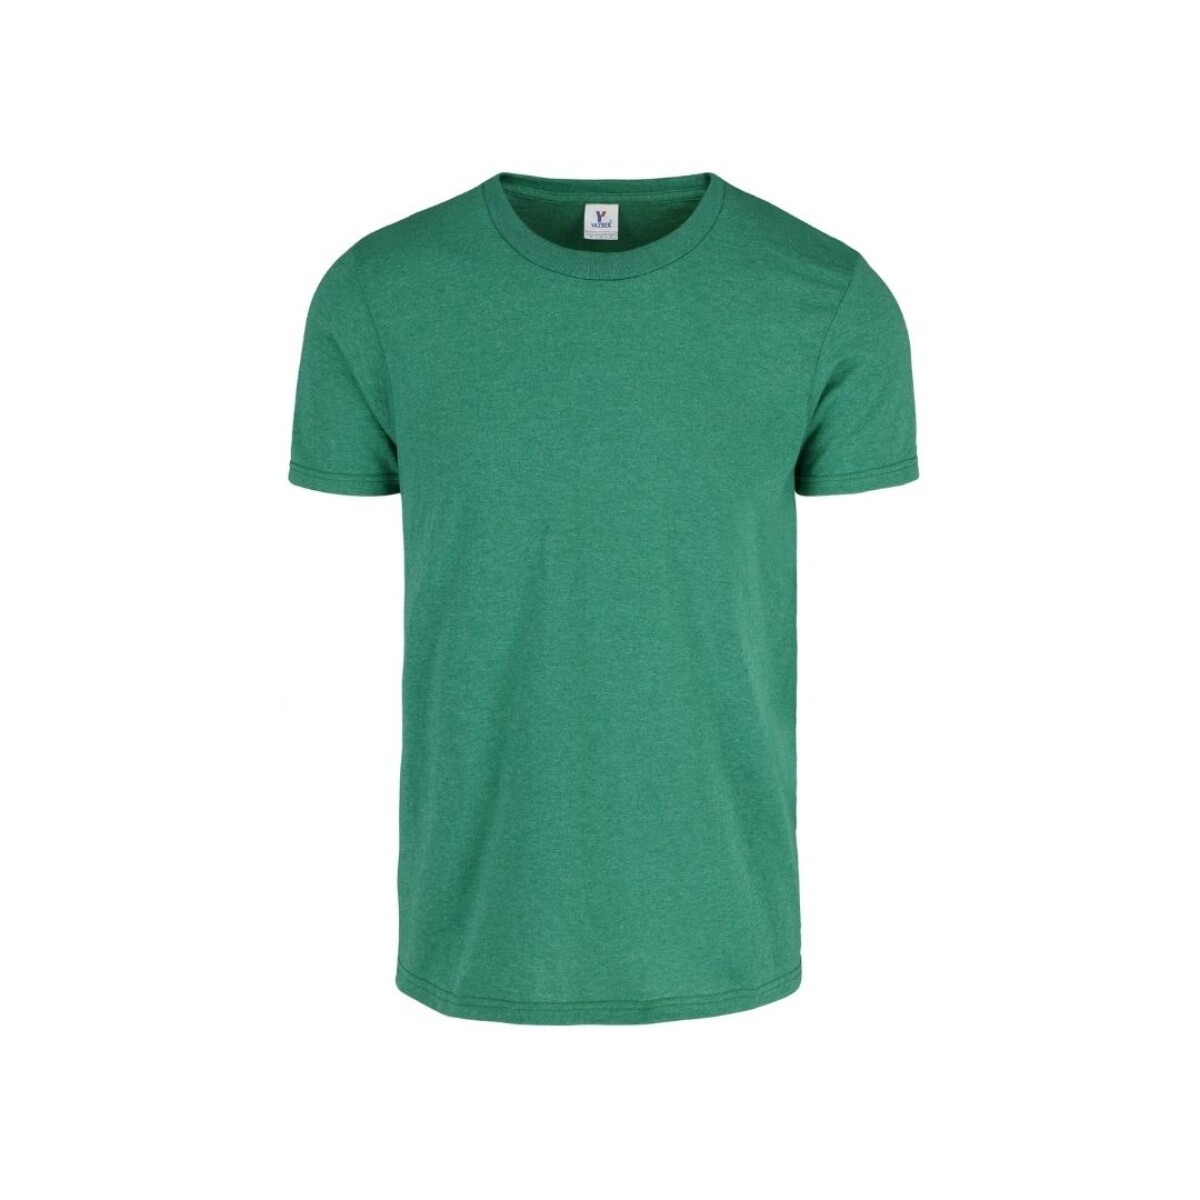 Camiseta a la base jaspe - Verde jade jaspe 